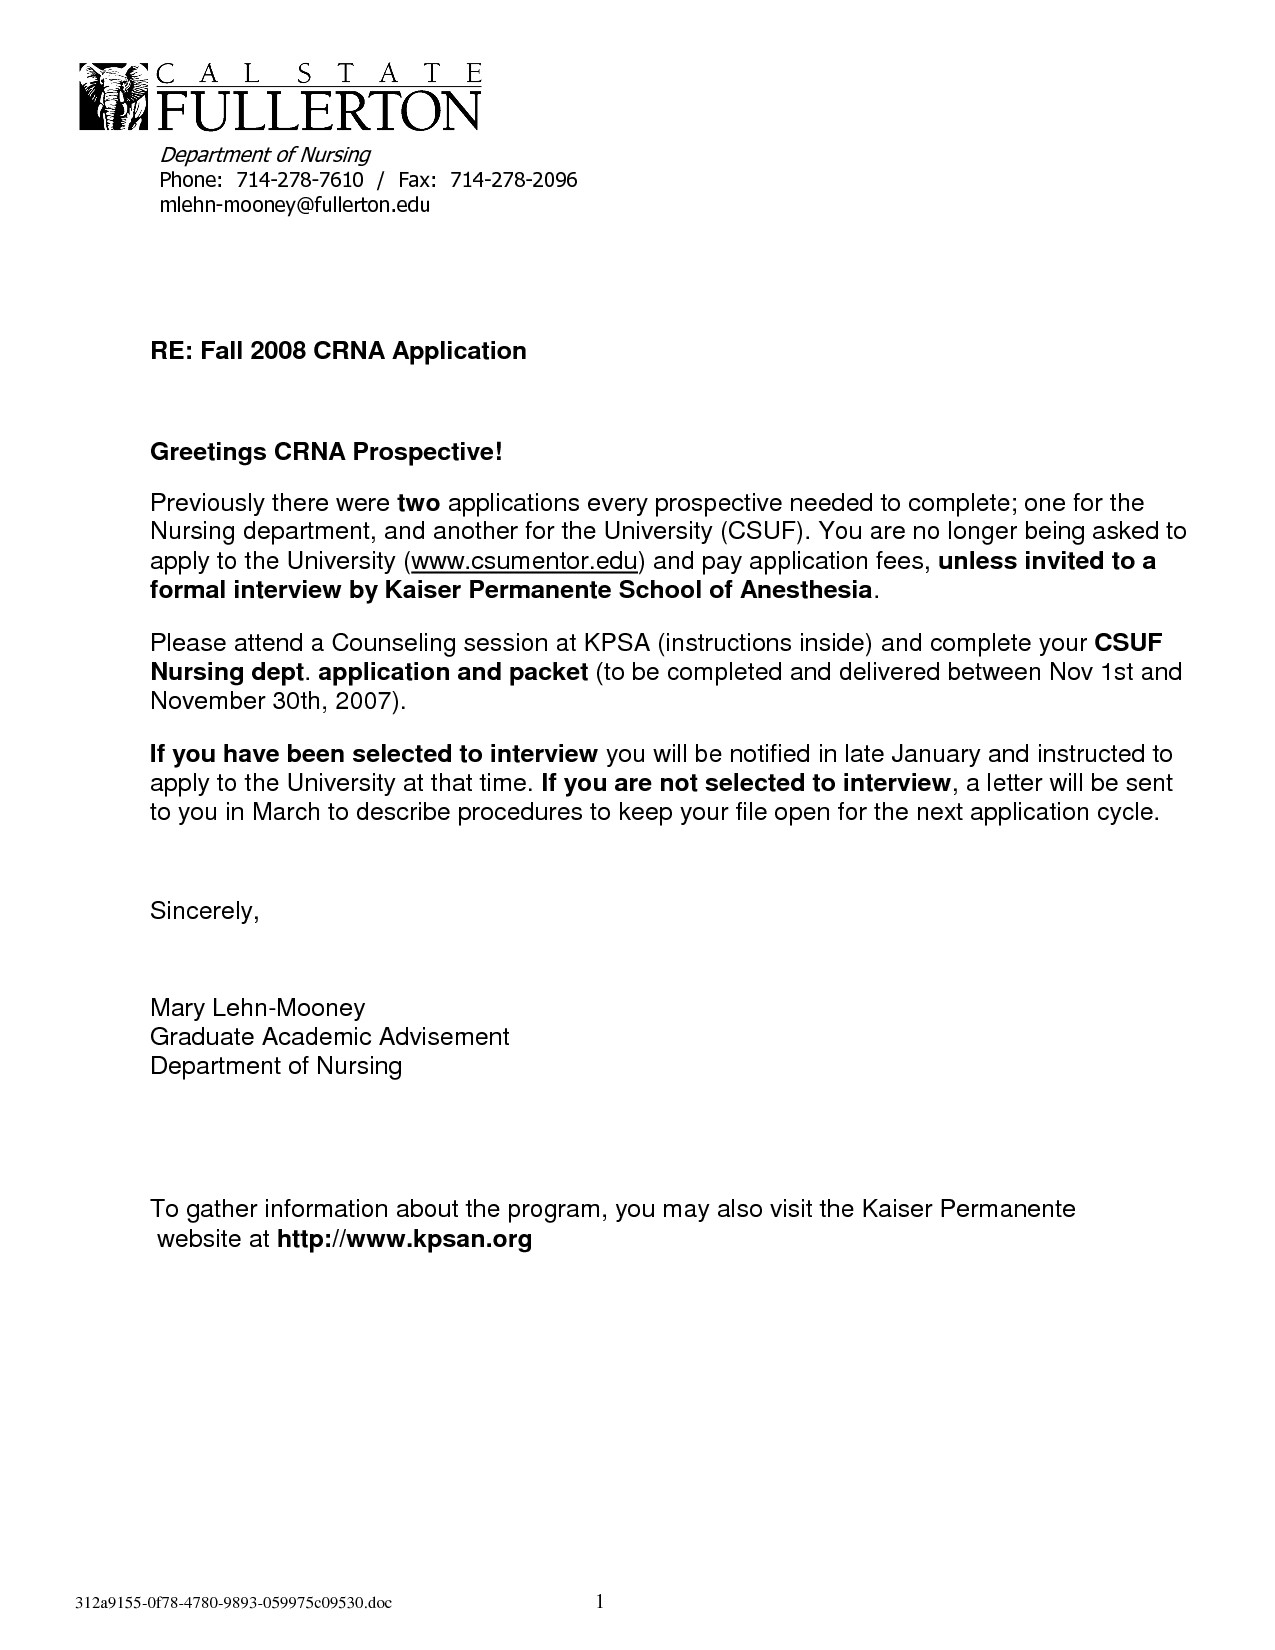 Offer Letter For Exempt Position 02/2022